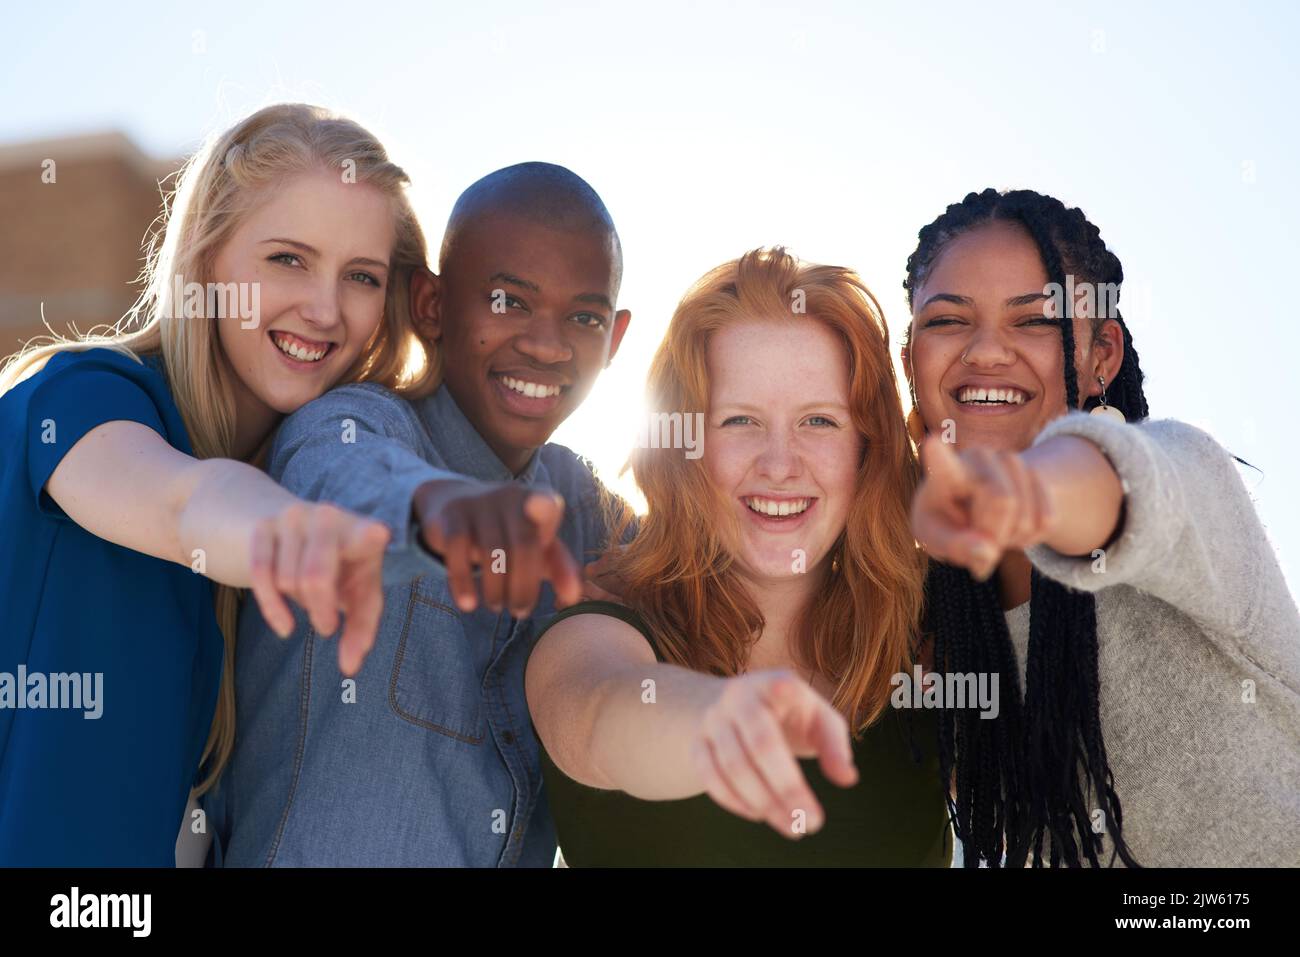 Sie können etwas bewirken. Porträt einer Gruppe von Menschen, die ihre Finger nach vorne zeigen. Stockfoto